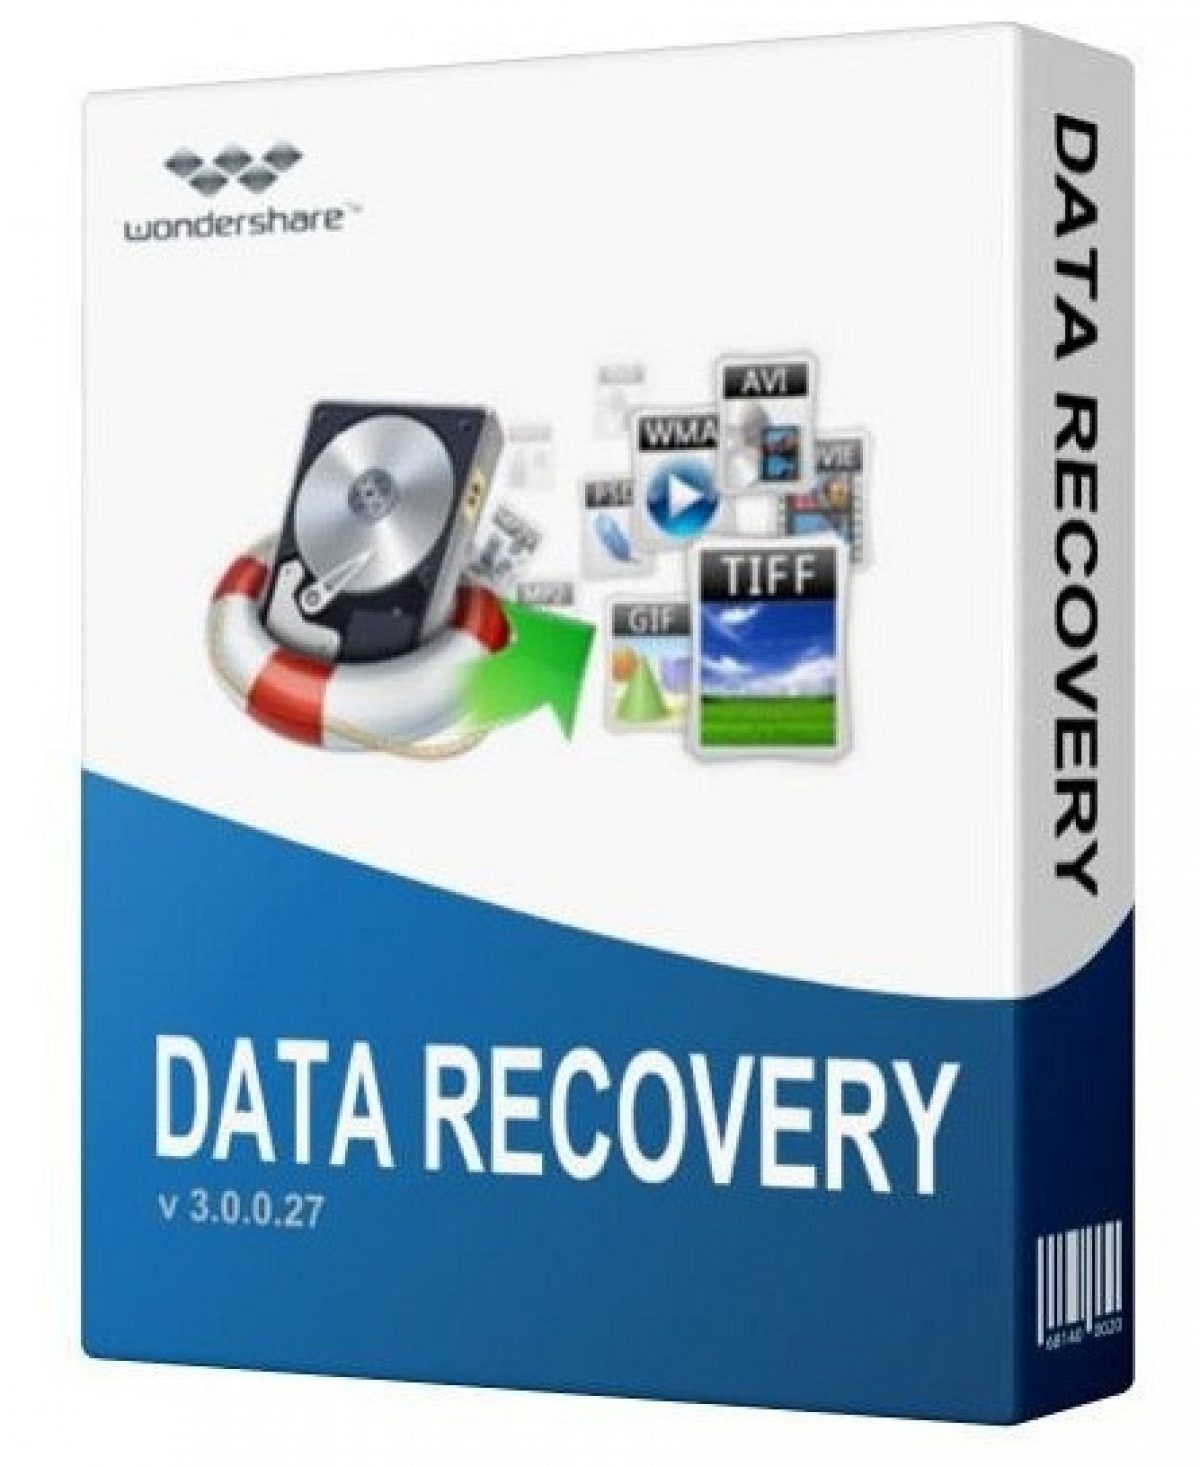 Wondershare Data Recovery 10.6.2.5 Crack